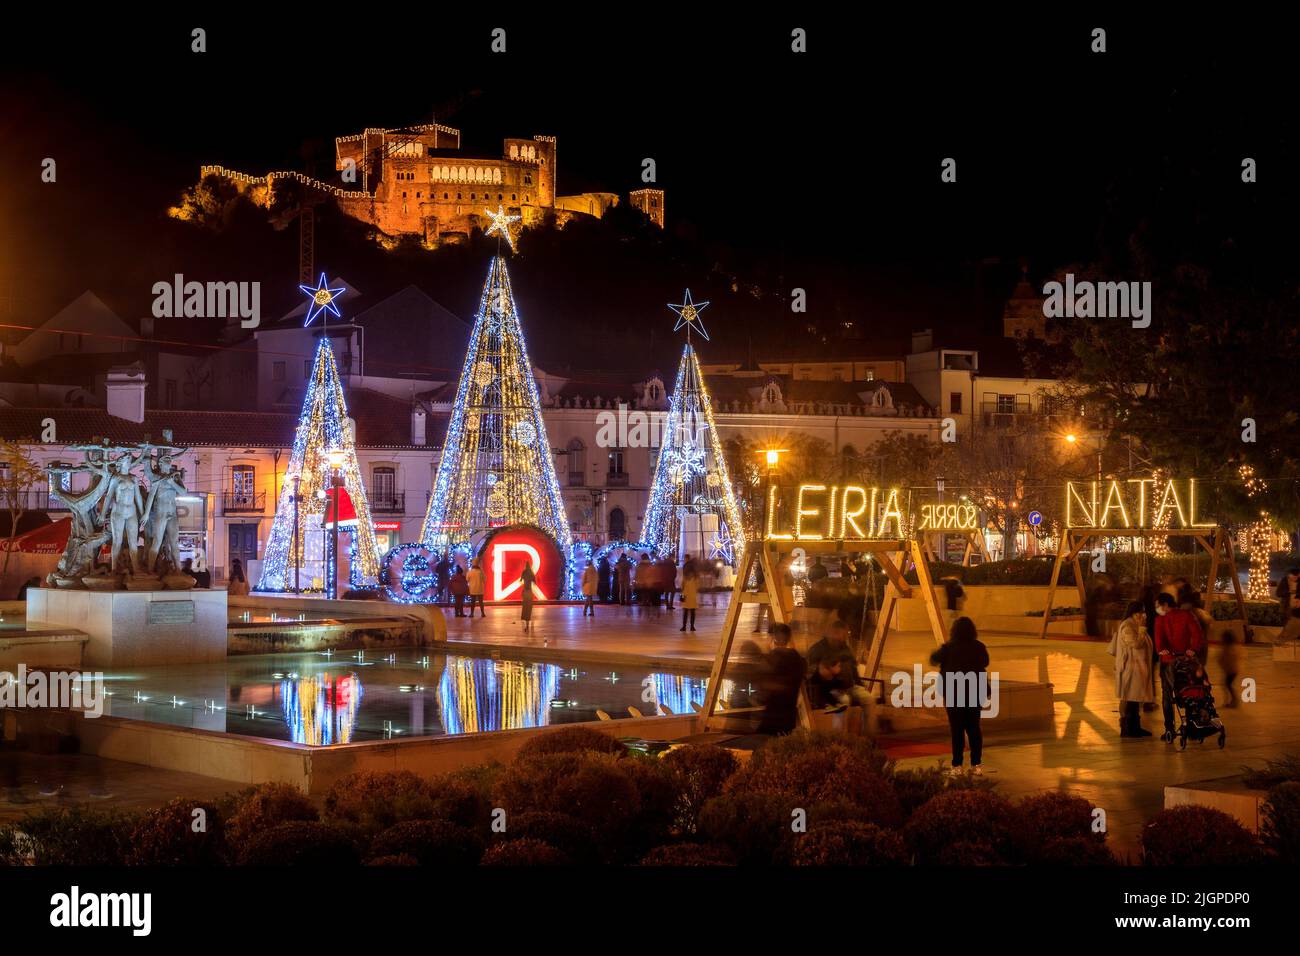 Leiria, Portugal - 8 de diciembre de 2021: Vista nocturna de la luminosa fuente y plaza del centro de la ciudad de Leiria en Portugal, con decoración navideña Foto de stock